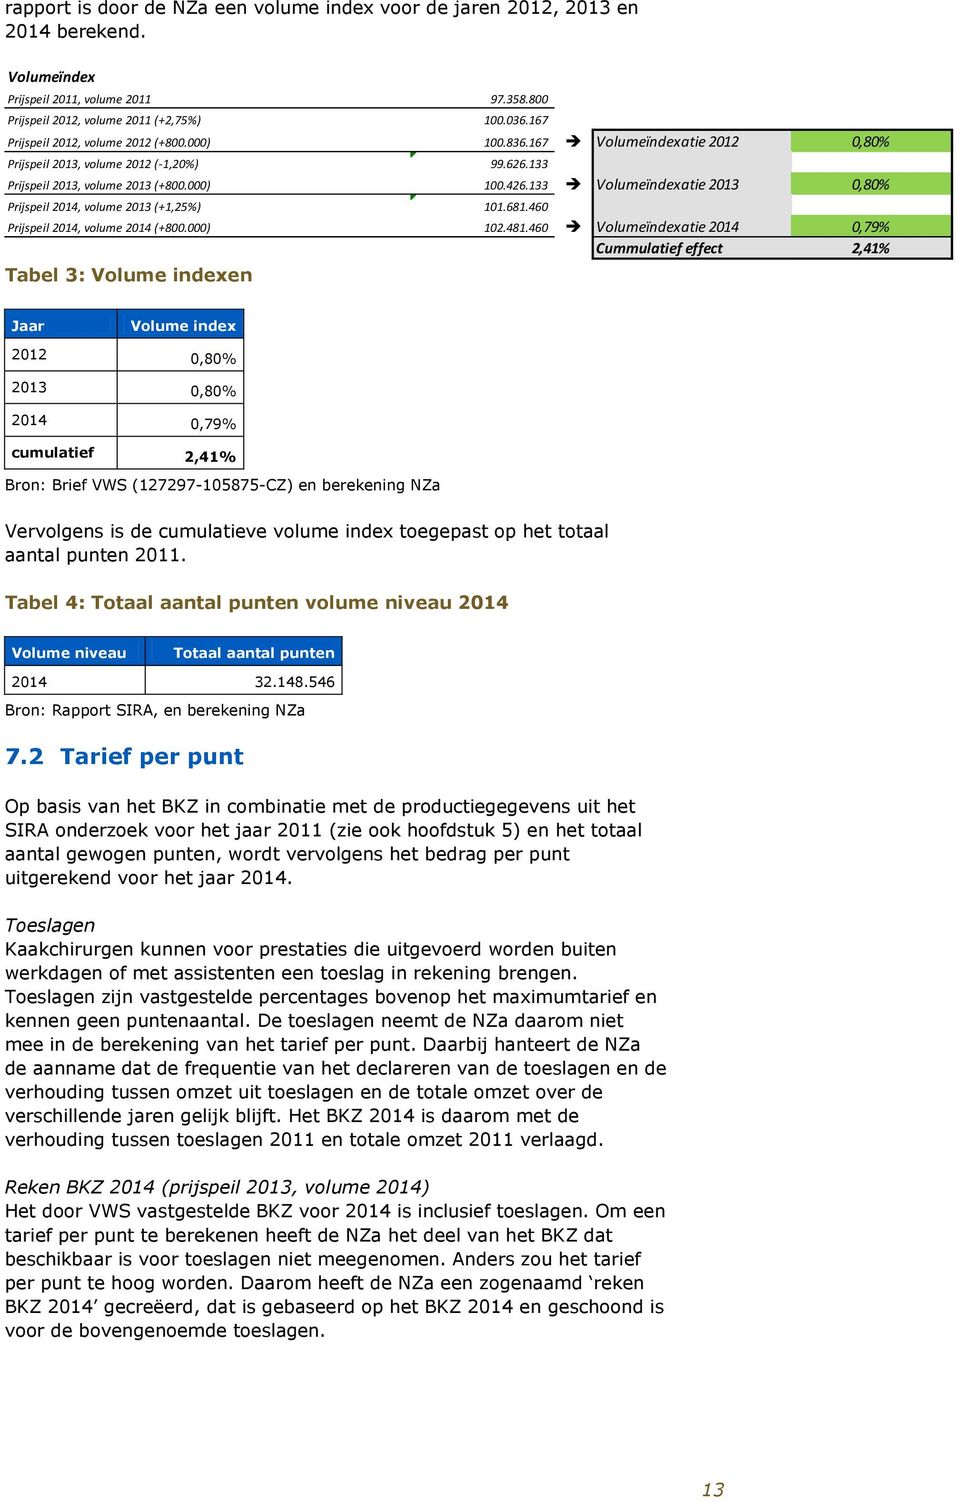 133 Volumeïndexatie 2013 0,80% Prijspeil 2014, volume 2013 (+1,25%) 101.681.460 Prijspeil 2014, volume 2014 (+800.000) 102.481.